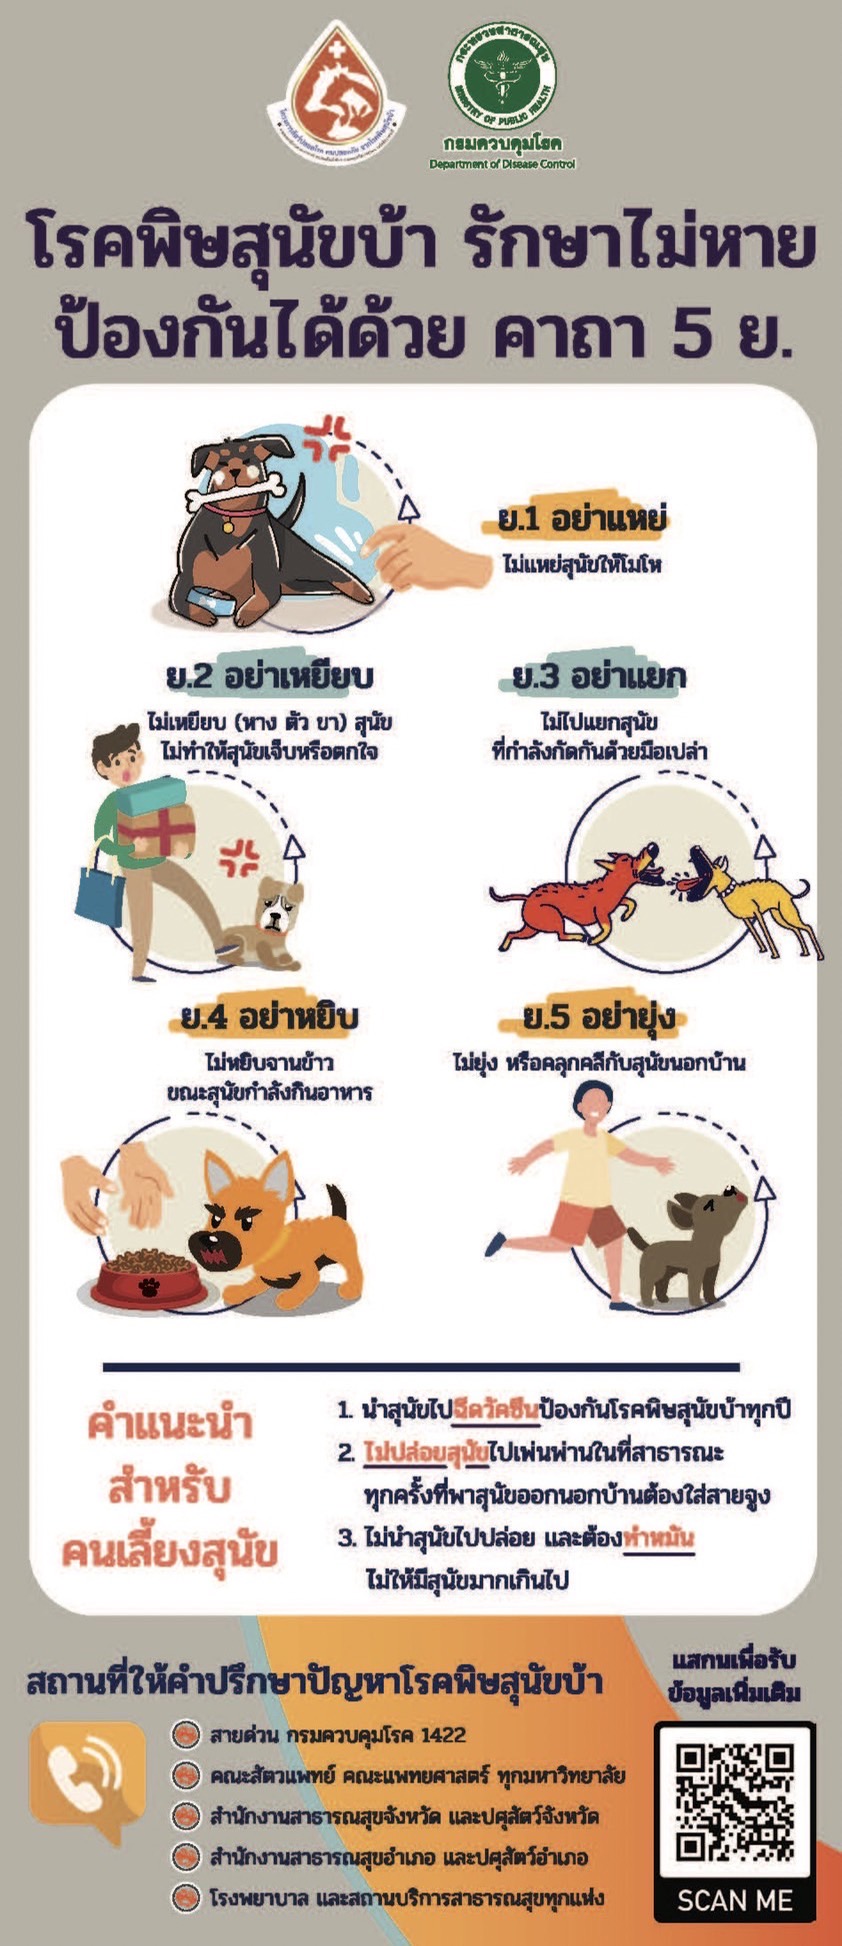 โรคพิษสุนัขบ้า รักษาไม่หาย ป้องกันด้วยคาถา 5 ย.